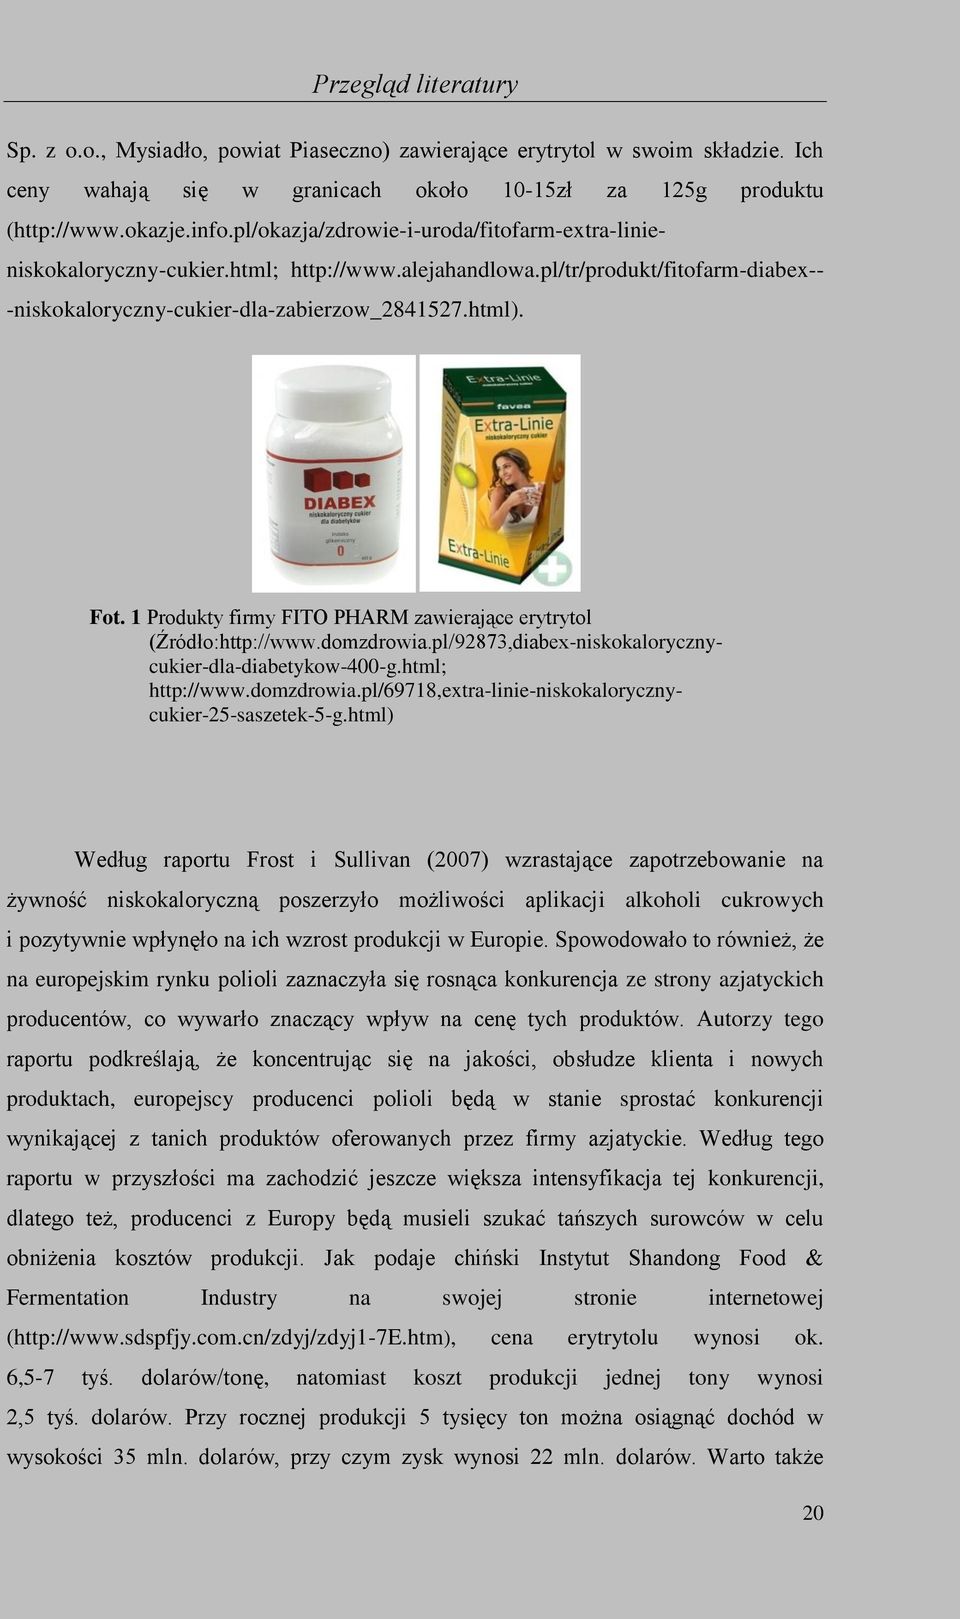 1 Produkty firmy FITO PHARM zawierające erytrytol (Źródło:http://www.domzdrowia.pl/92873,diabex-niskokalorycznycukier-dla-diabetykow-400-g.html; http://www.domzdrowia.pl/69718,extra-linie-niskokalorycznycukier-25-saszetek-5-g.